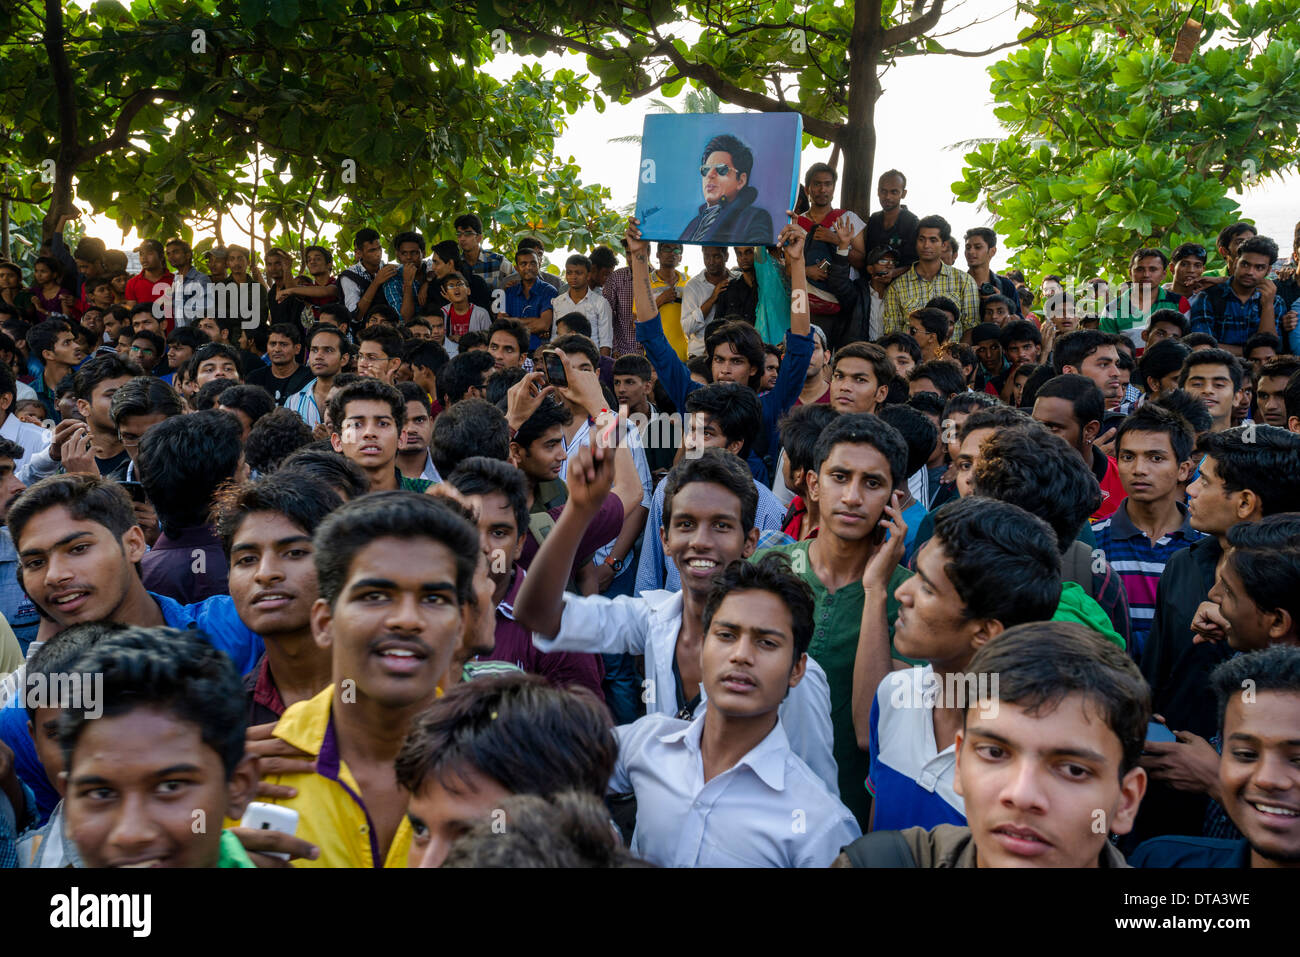 Crowds of fans gathering at the gate of Shahrukh Khan's villa at his birthday, Bandra, Mumbai, Maharashtra, India Stock Photo